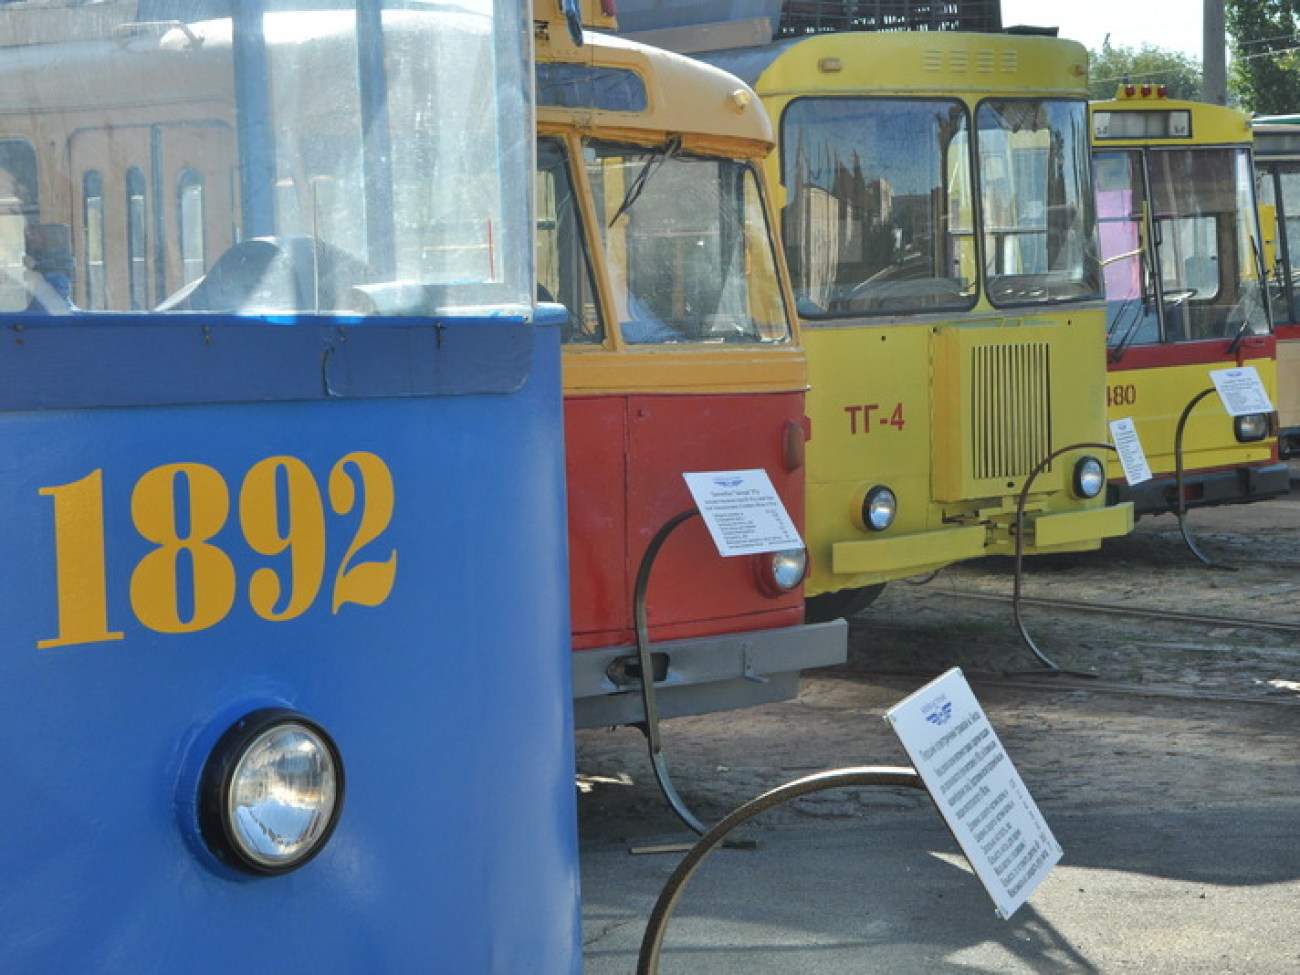 В Киеве открылся Музей городского пассажирского транспорта, 31 августа 2012г.